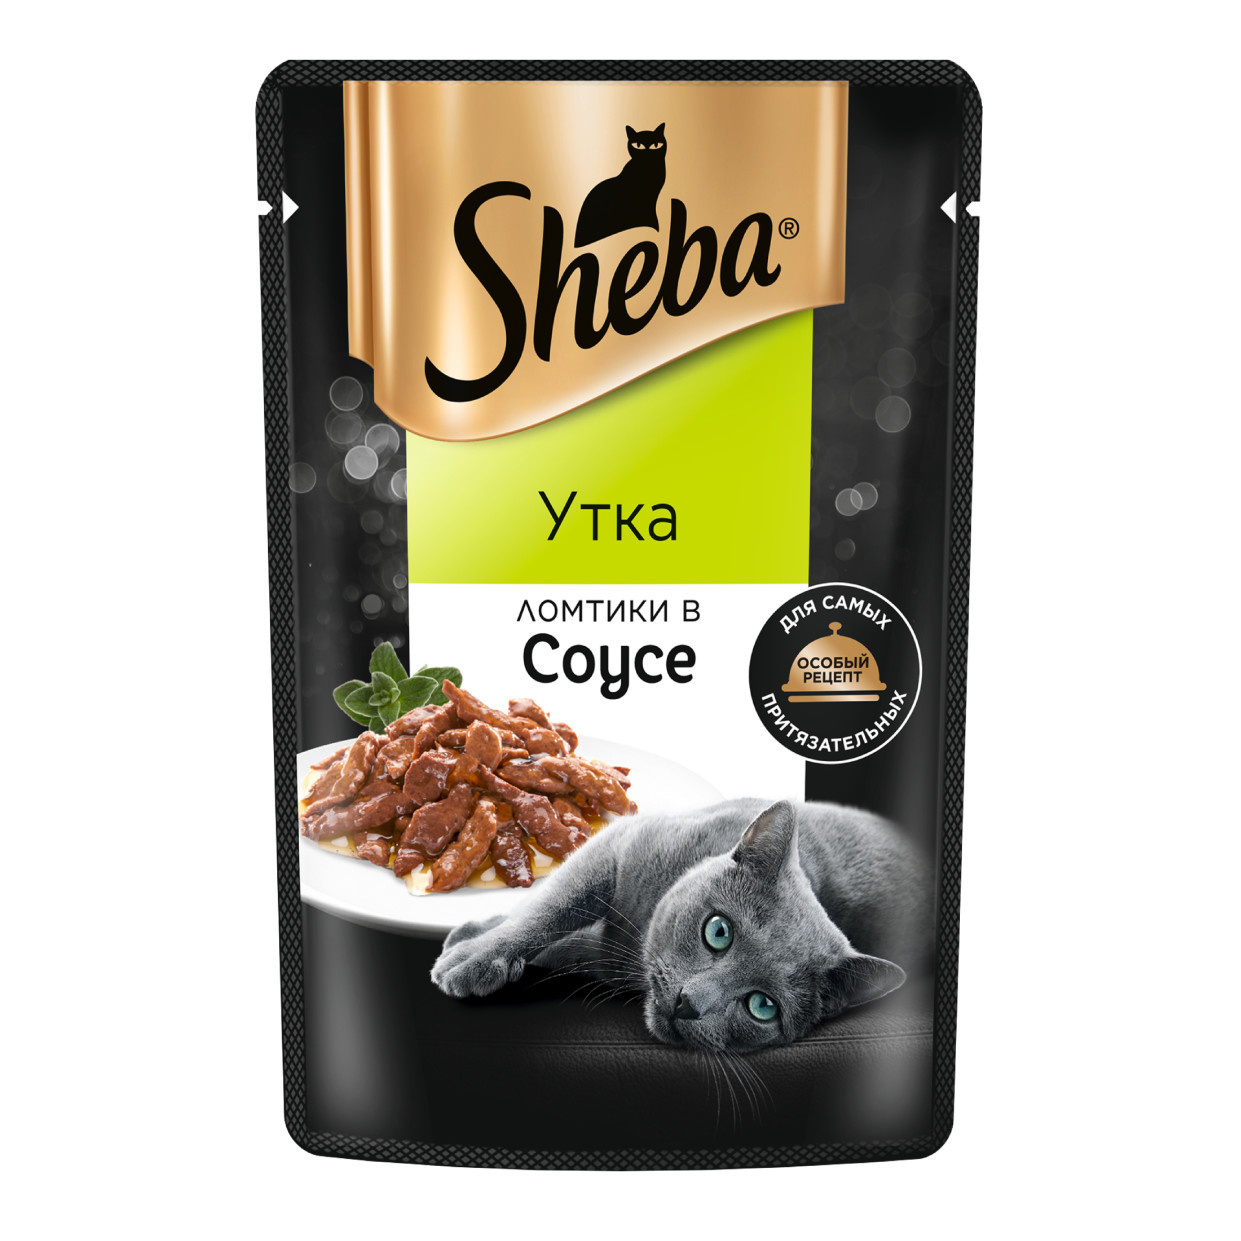 Sheba влажный корм для кошек «Ломтики в соусе с уткой» (75 г) Sheba влажный корм для кошек «Ломтики в соусе с уткой» (75 г) - фото 1